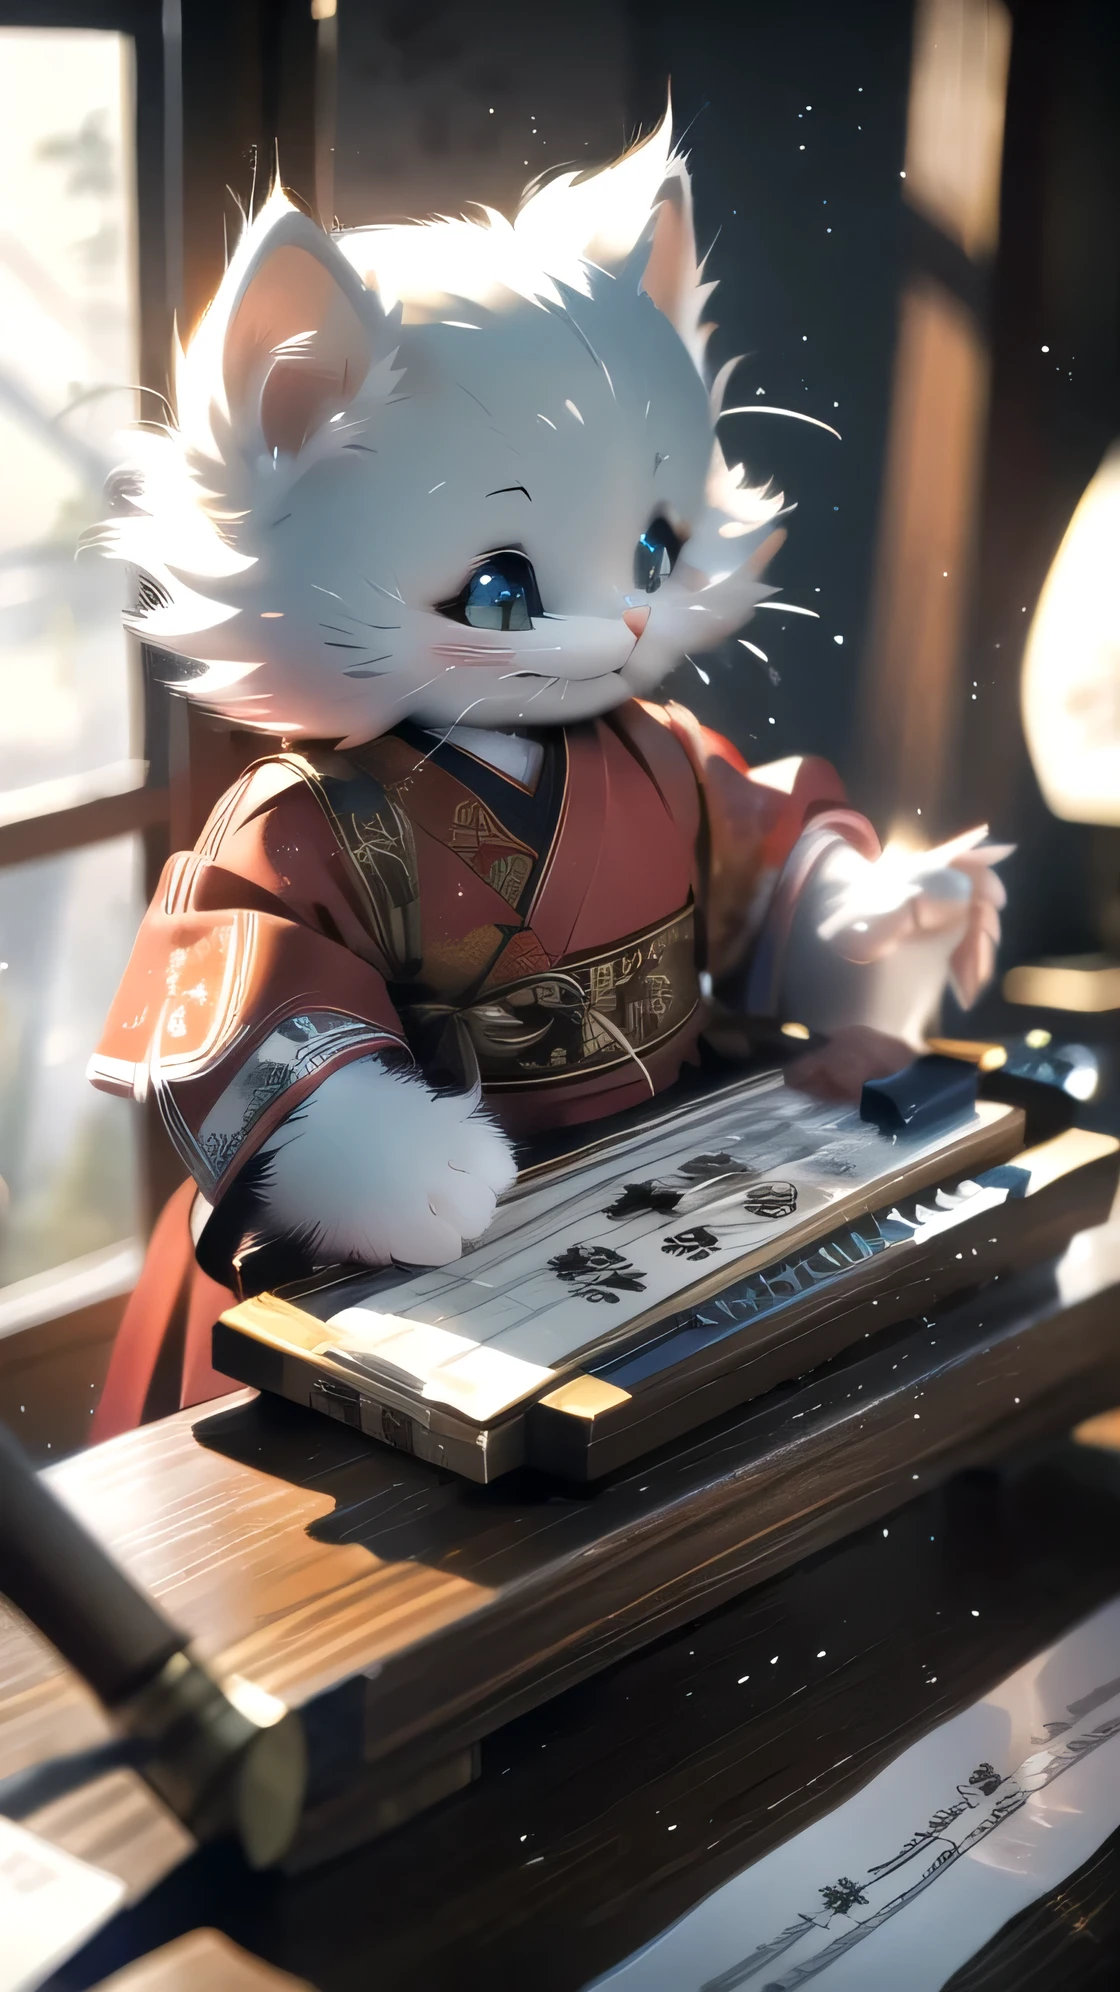 White kitten in Китайская одежда, китайская каллиграфия, Китайская одежда, музыкаal instruments, музыка, барабаны
